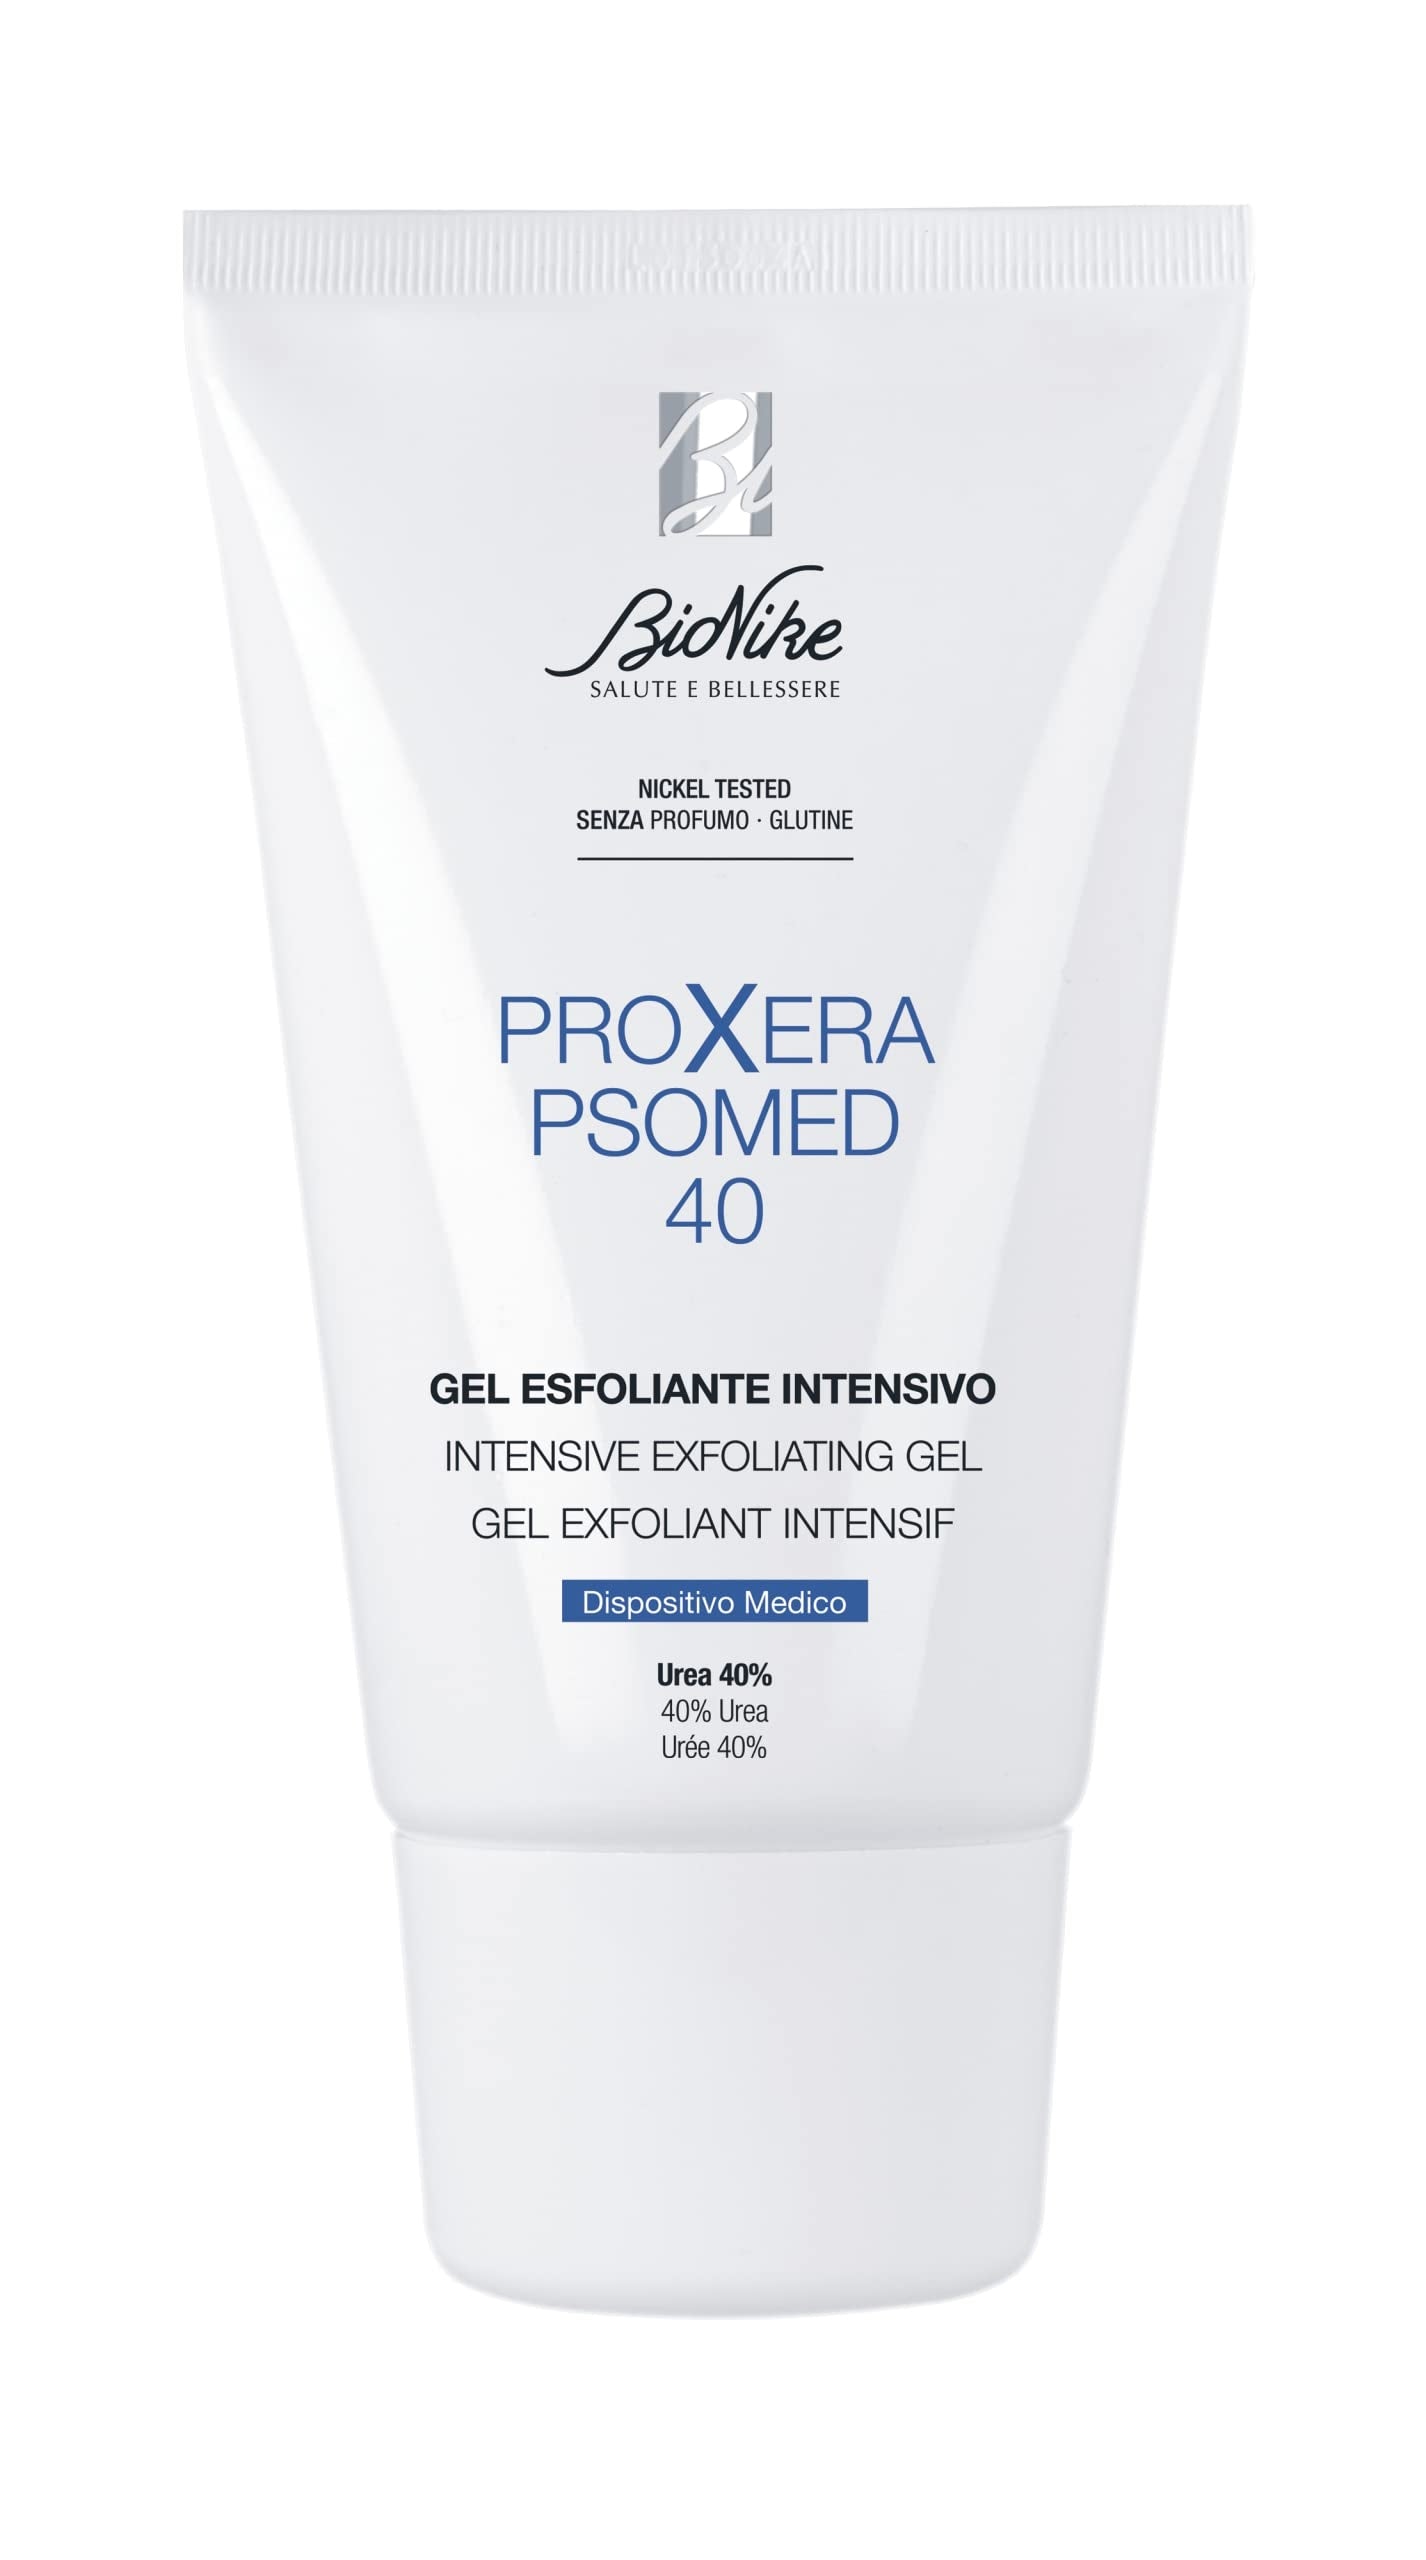 BioNike Proxera Psomed 40 Intensive Exfoliating Gel 100 ml